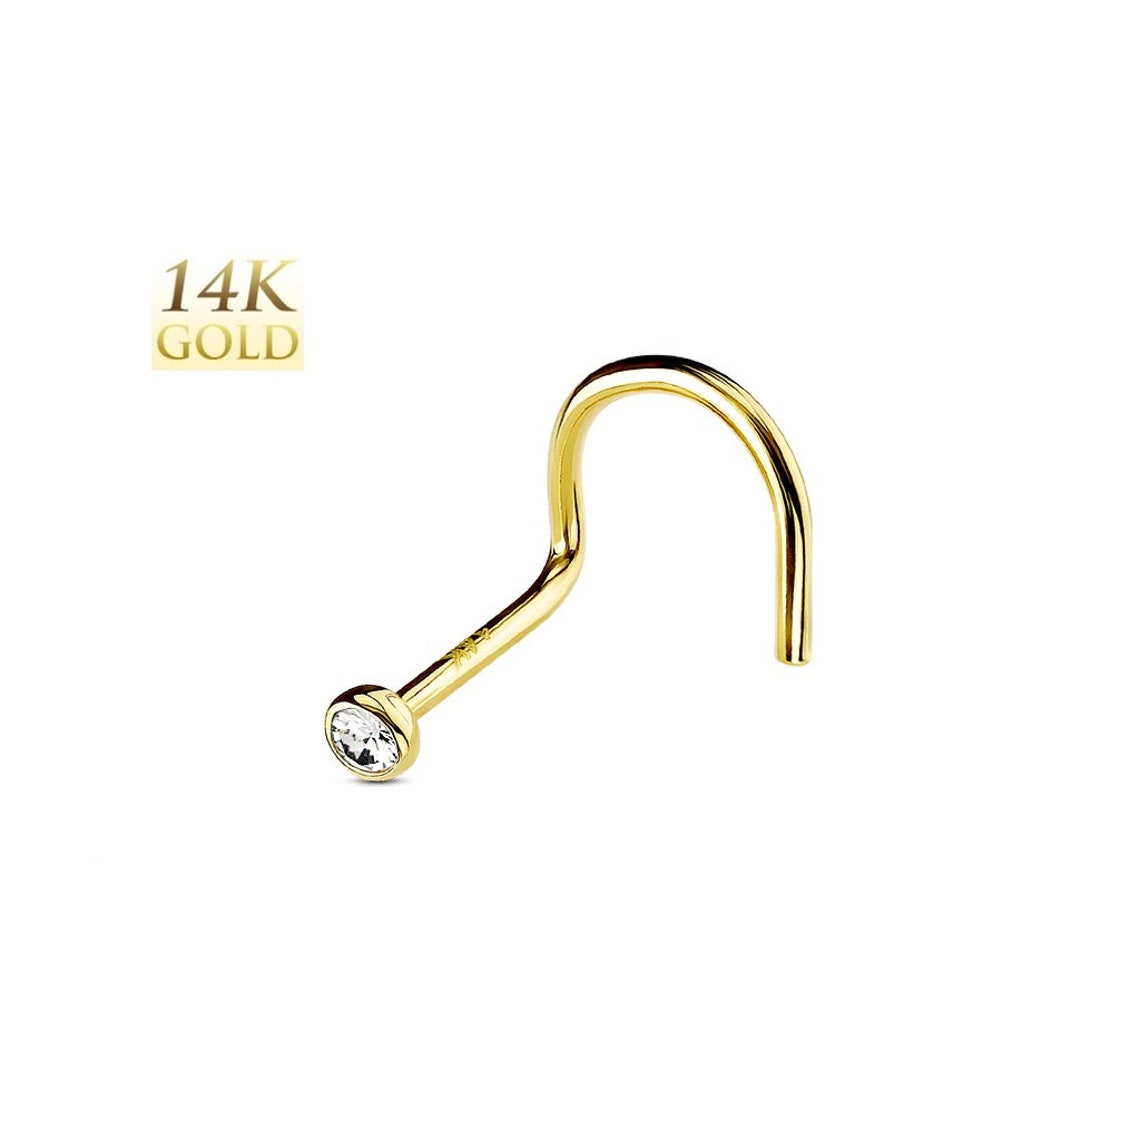 14K Solid Gold Clear Gem Bezel Set Nose Screw Ring Stud Body | Etsy